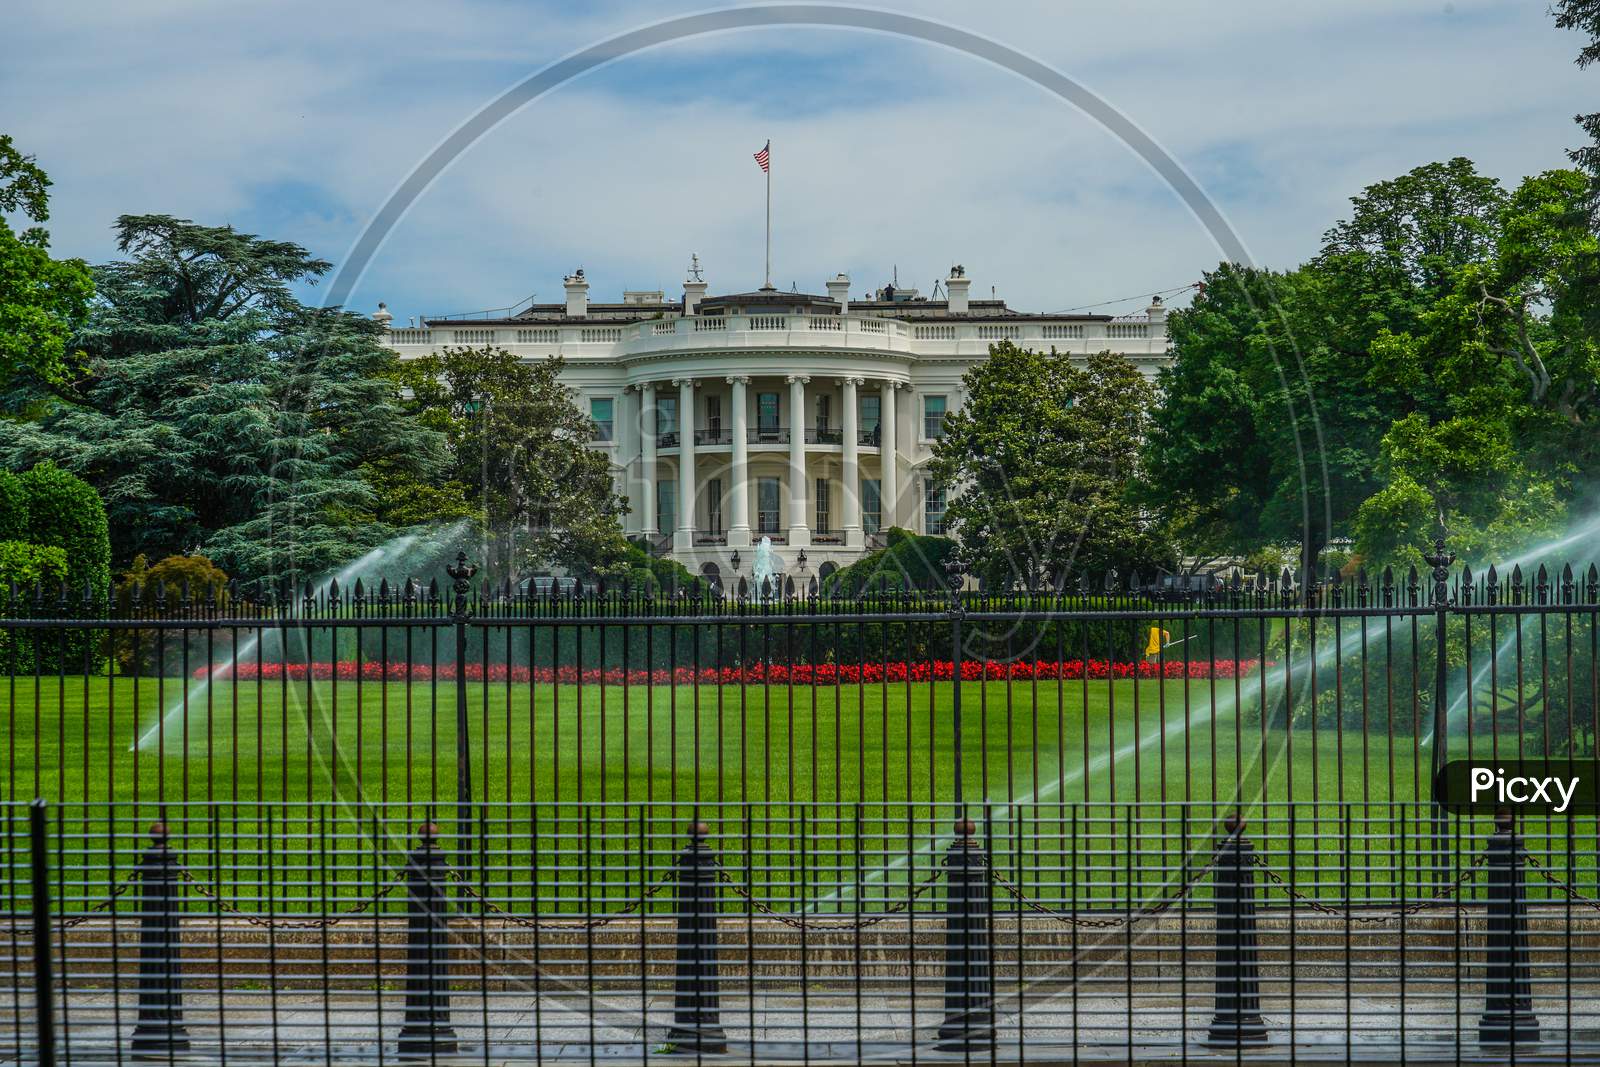 White House (Washington, Dc)